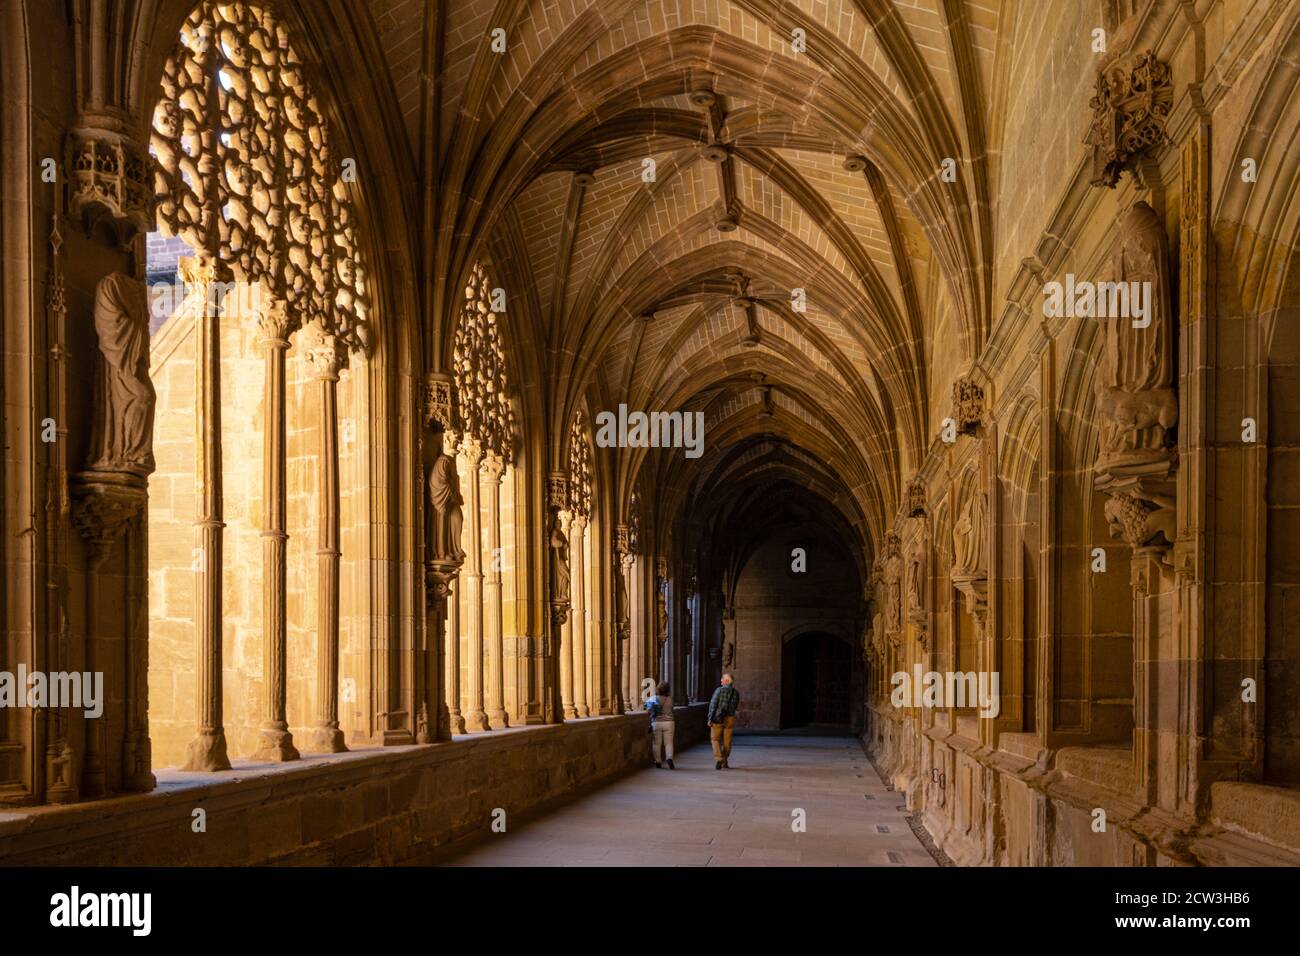 claustro de los Caballeros, Monasterio de Santa María la Real, Nájera, la Rioja, Spagna Foto Stock